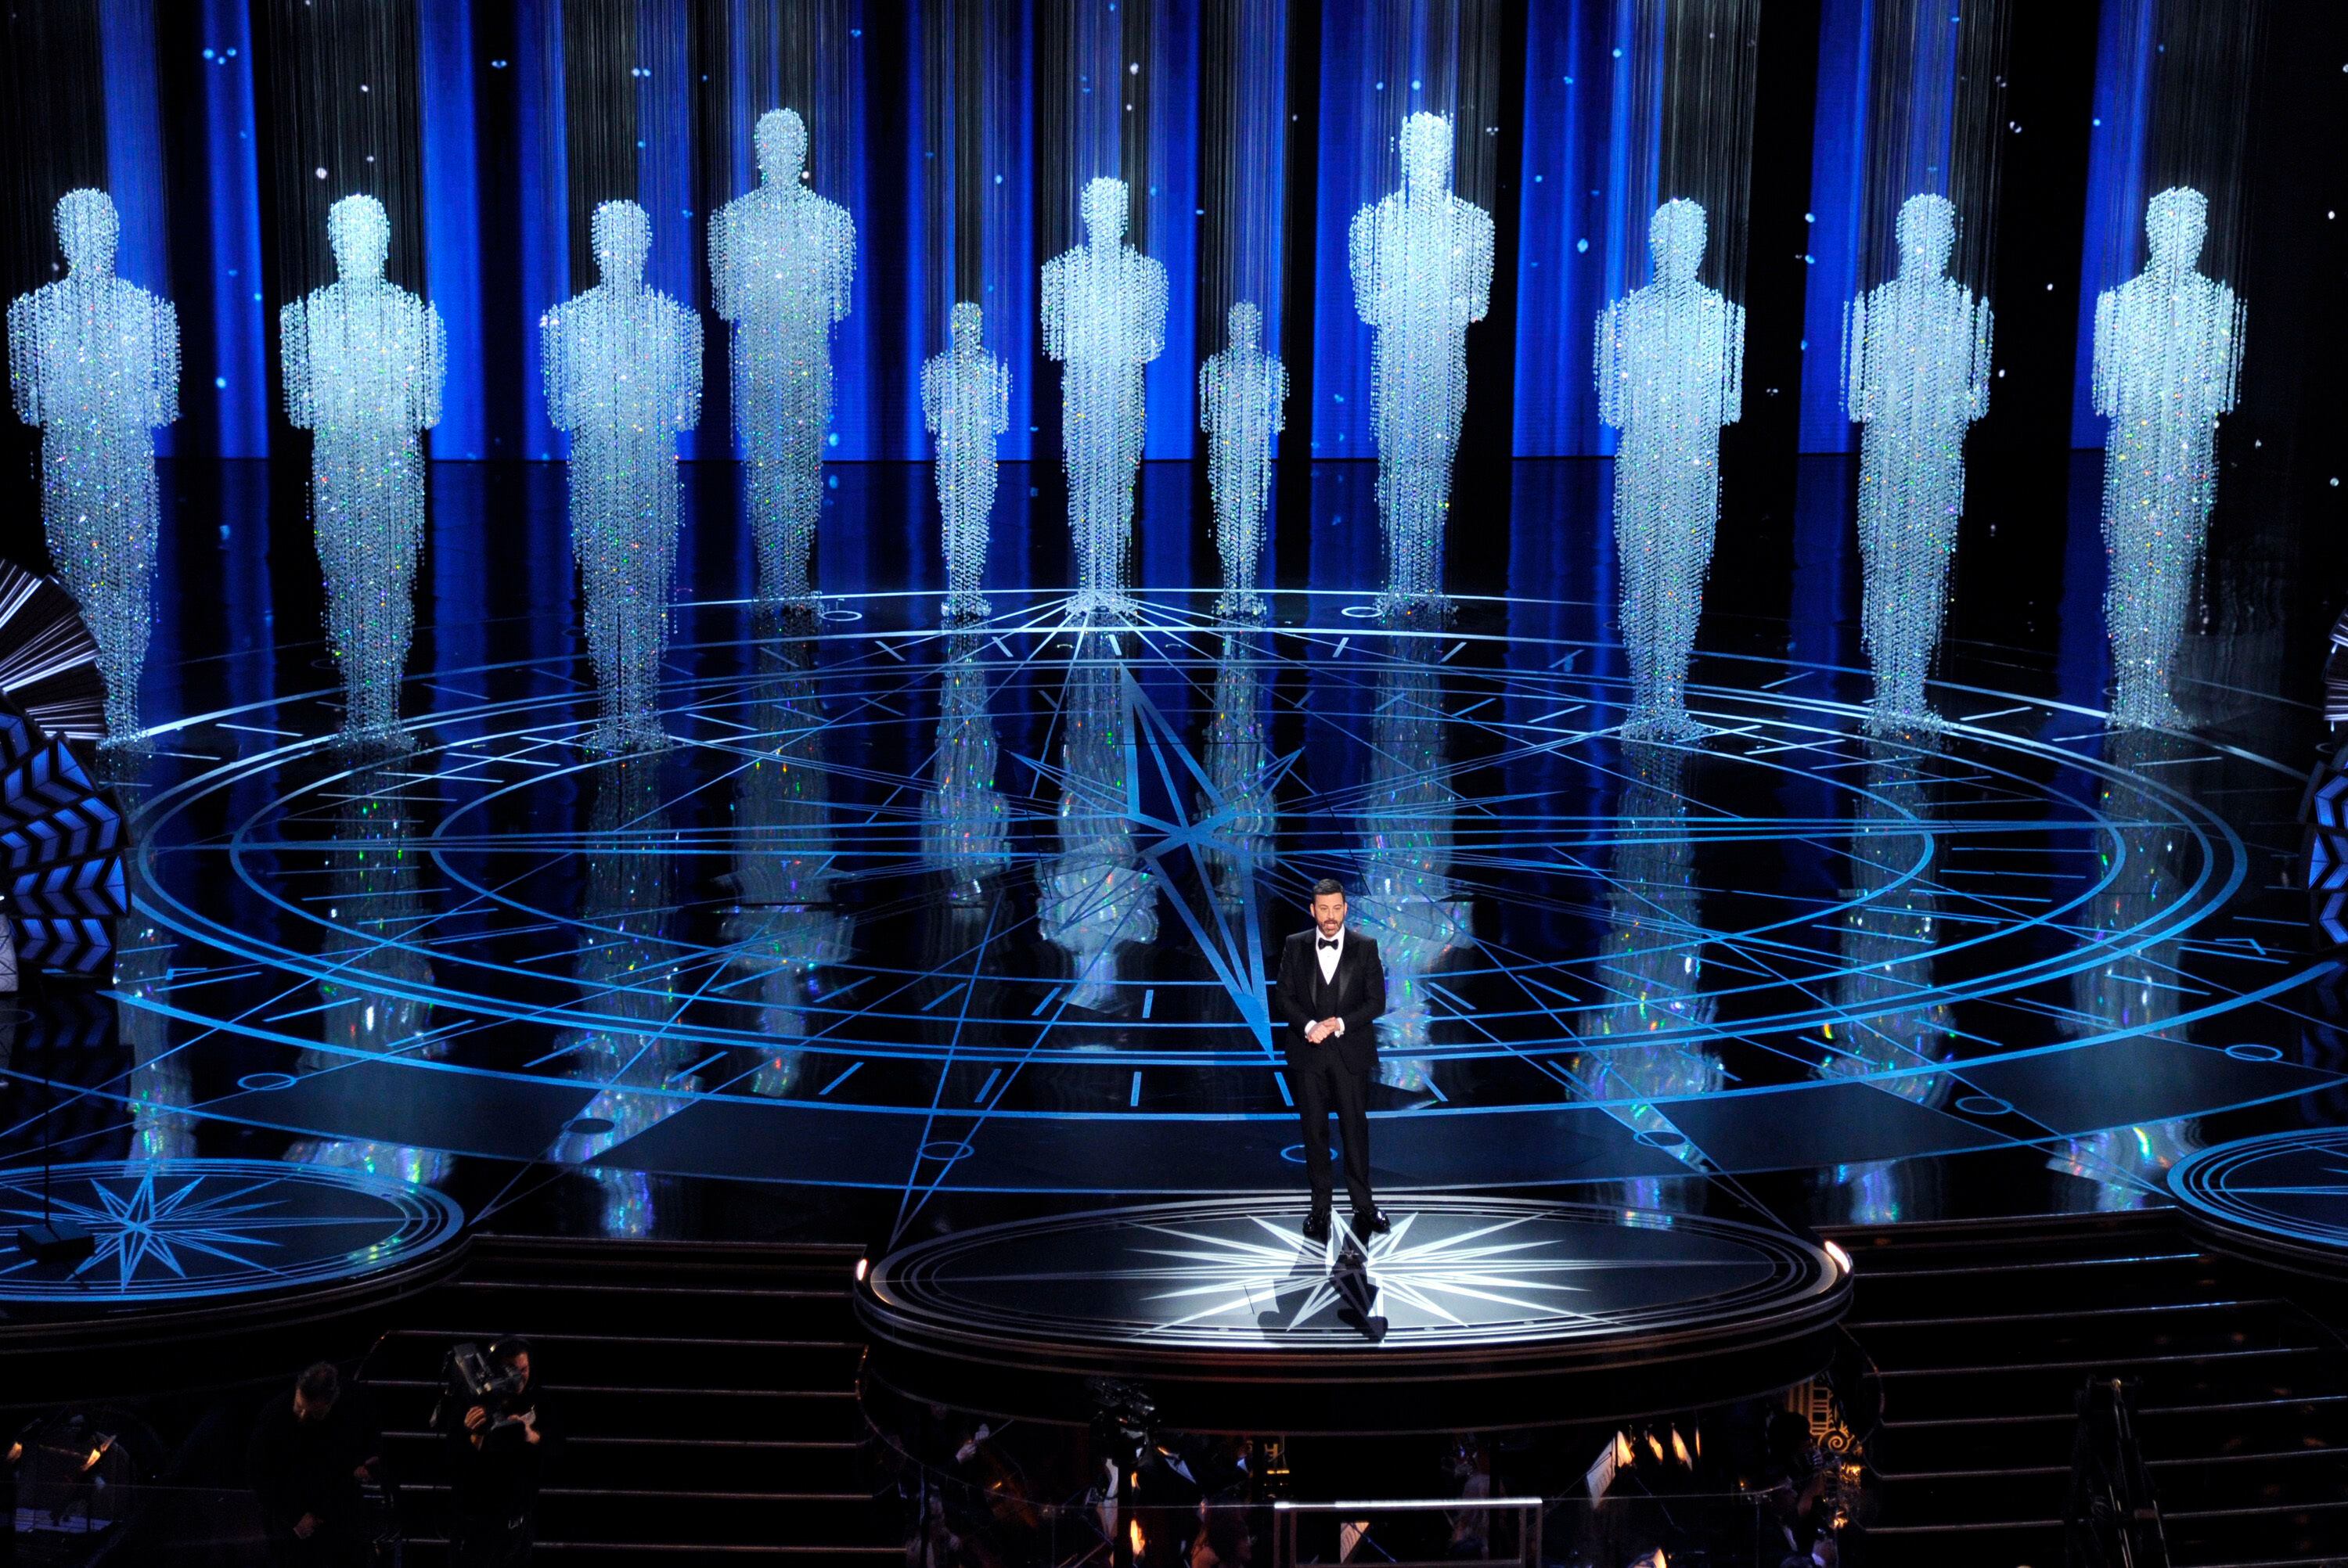 ARCHIVO - En esta foto del 26 de febrero de 2017, el presentador Jimmy Kimmel durante la ceremonia de los premios Oscar en Los Angeles. (Foto por Chris Pizzello/Invision/AP, Archivo)